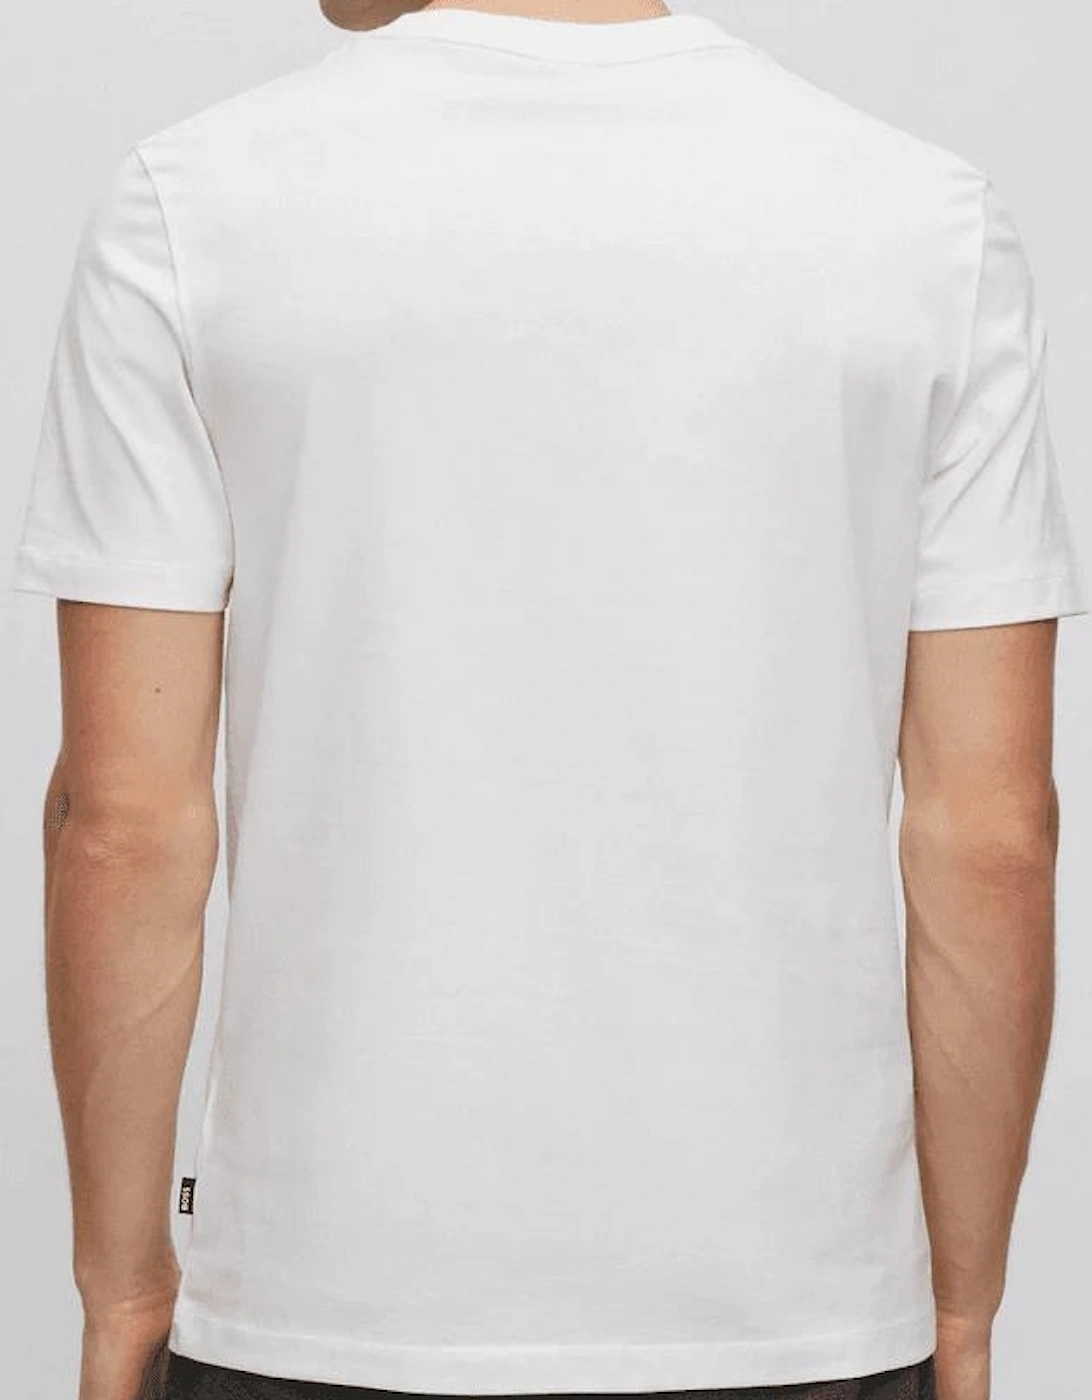 Tilburt 354 Regular Fit White T-Shirt